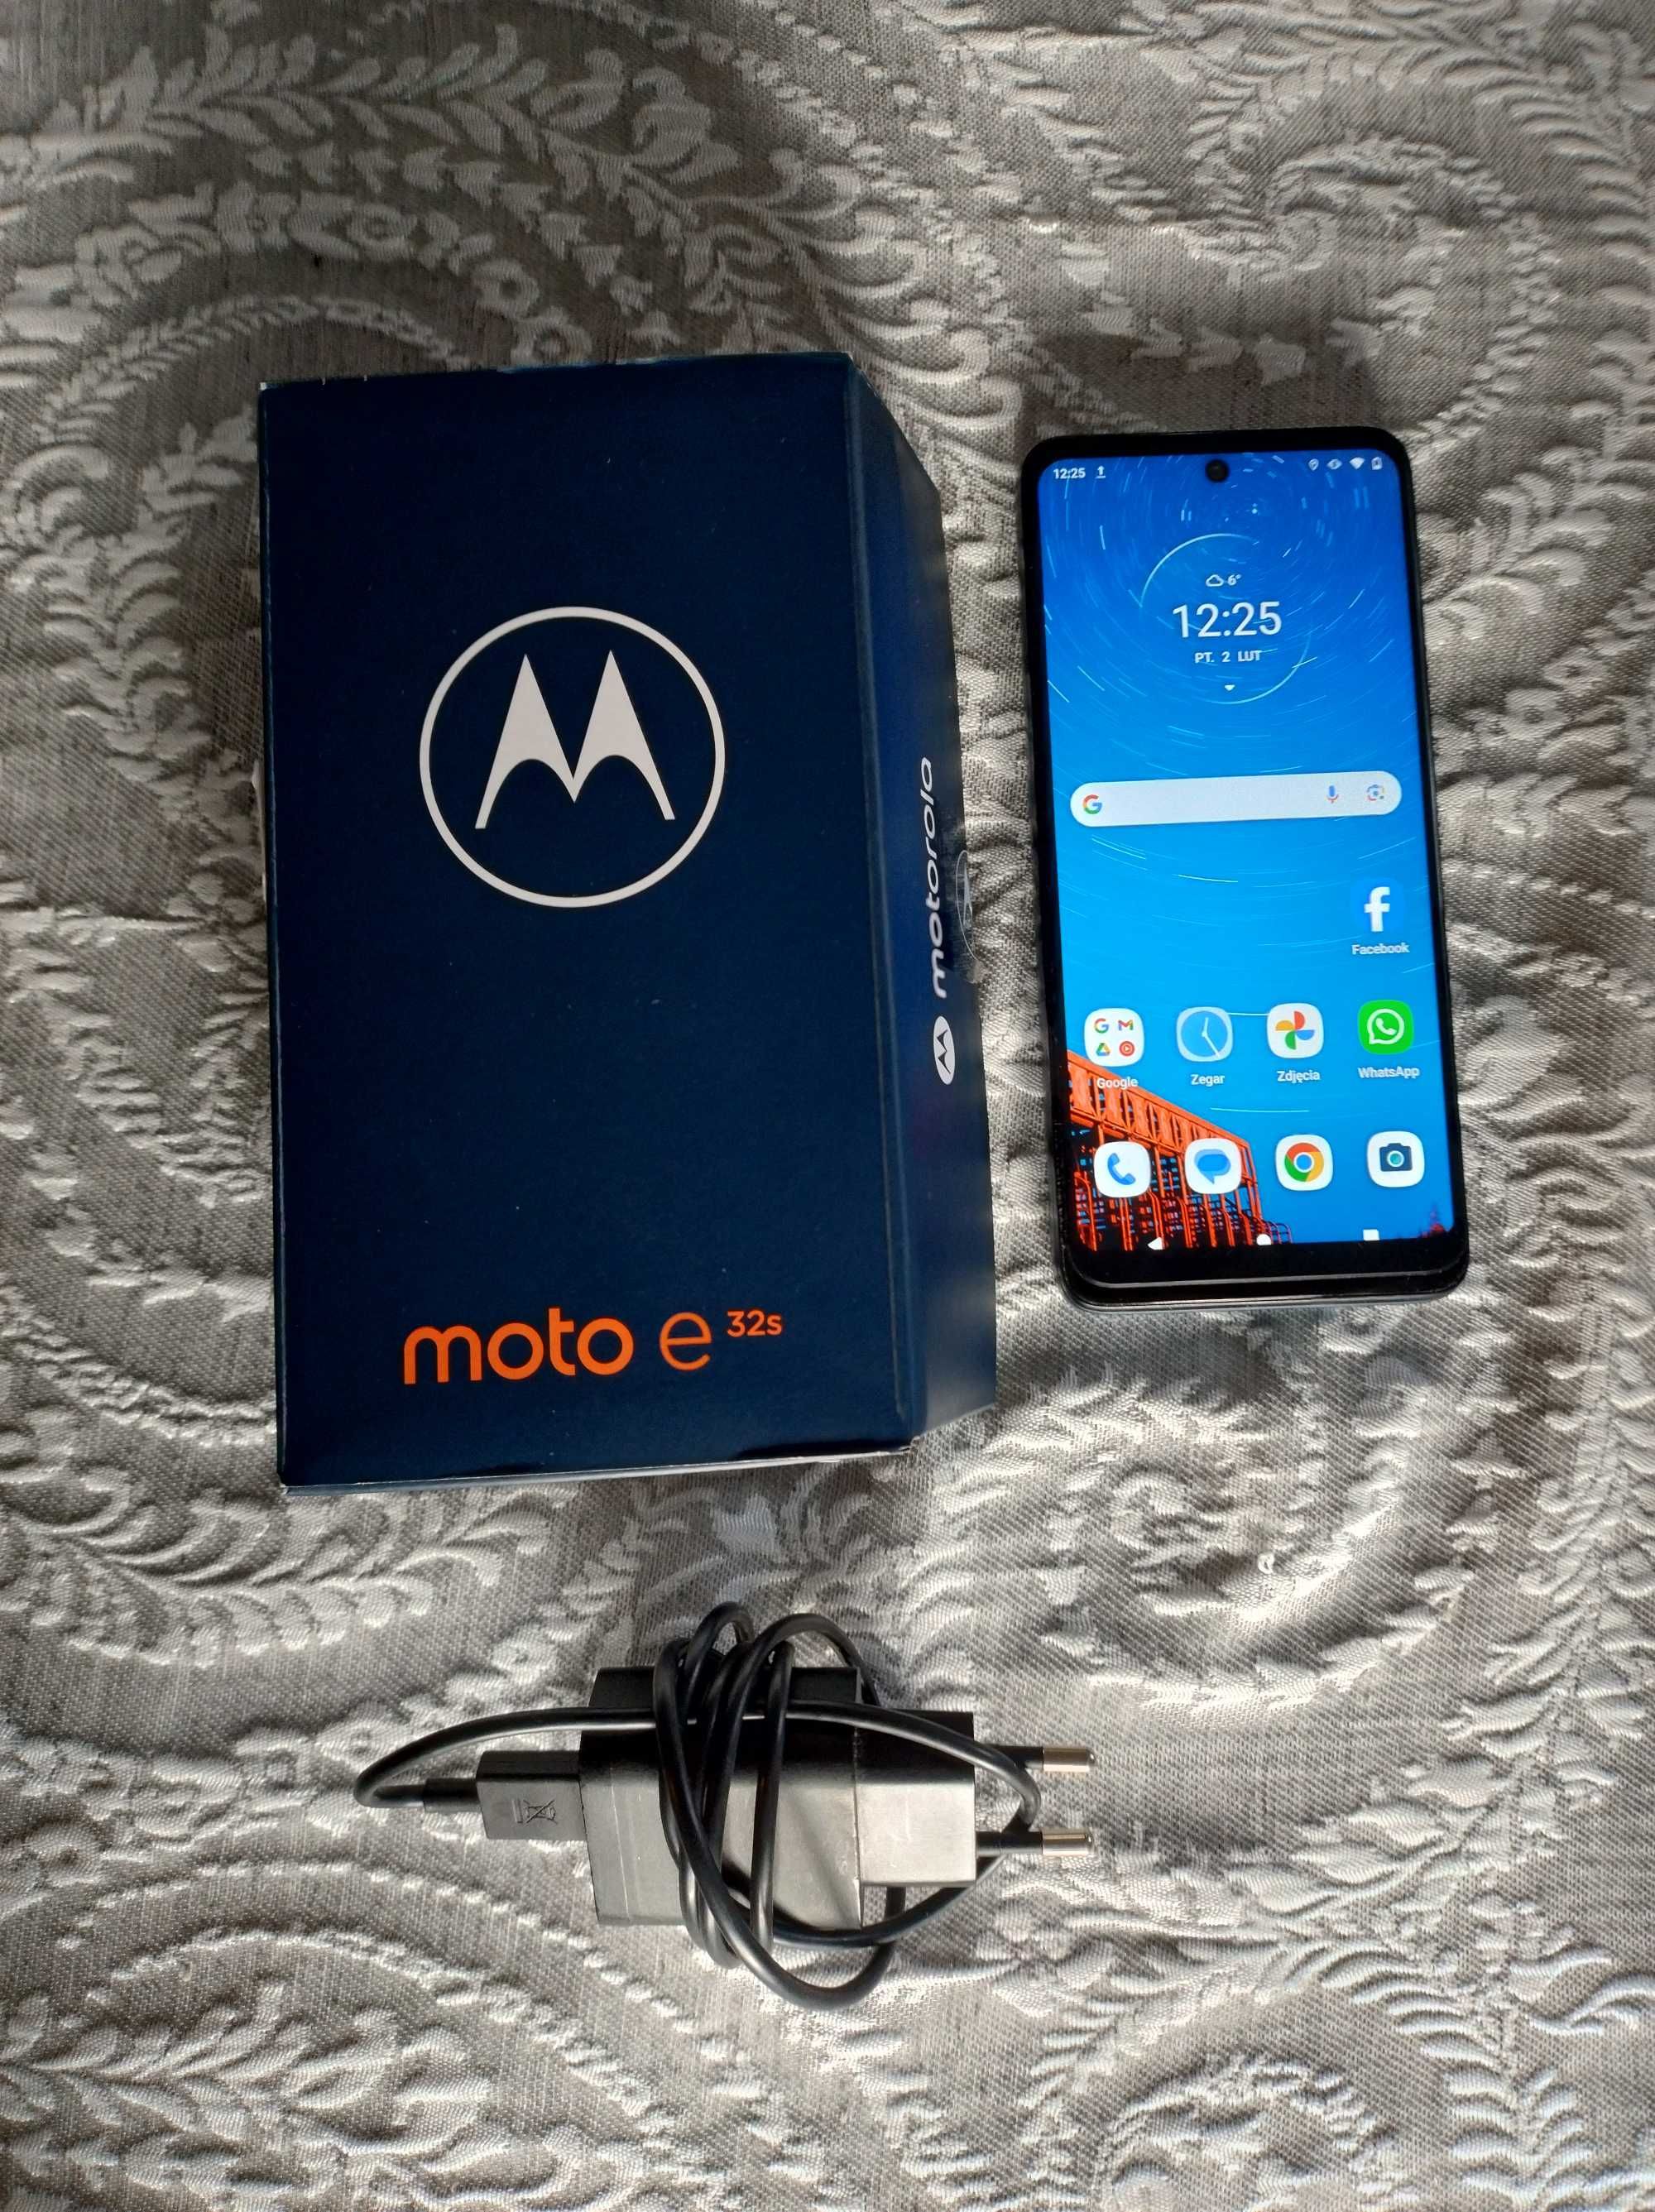 Motorola Moto E 32 s